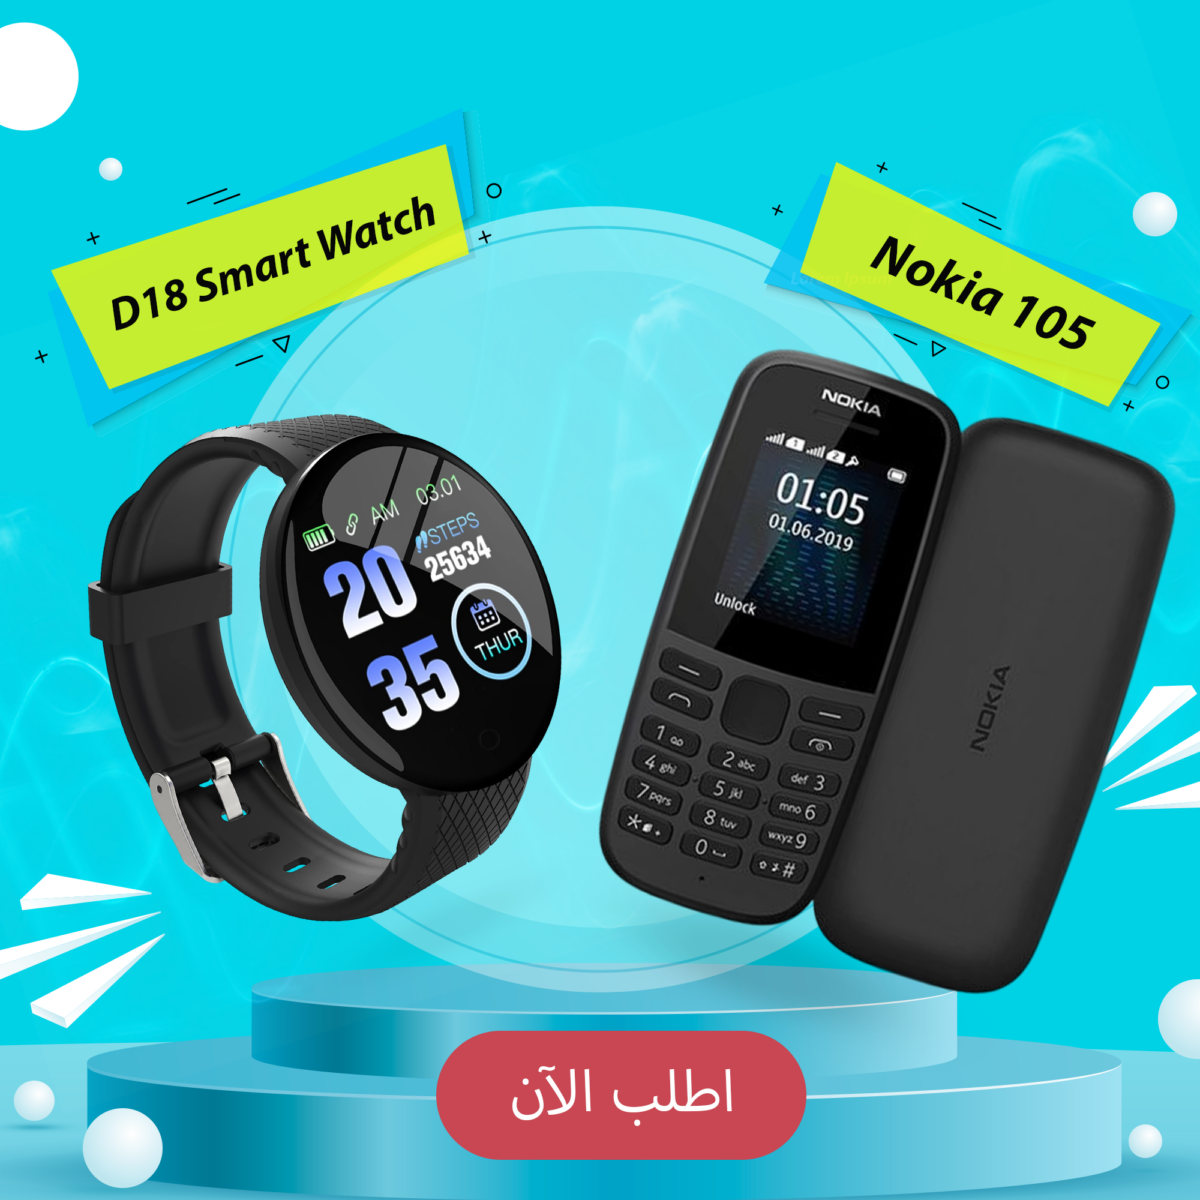 Nokia 105 + D18 Smart Watch